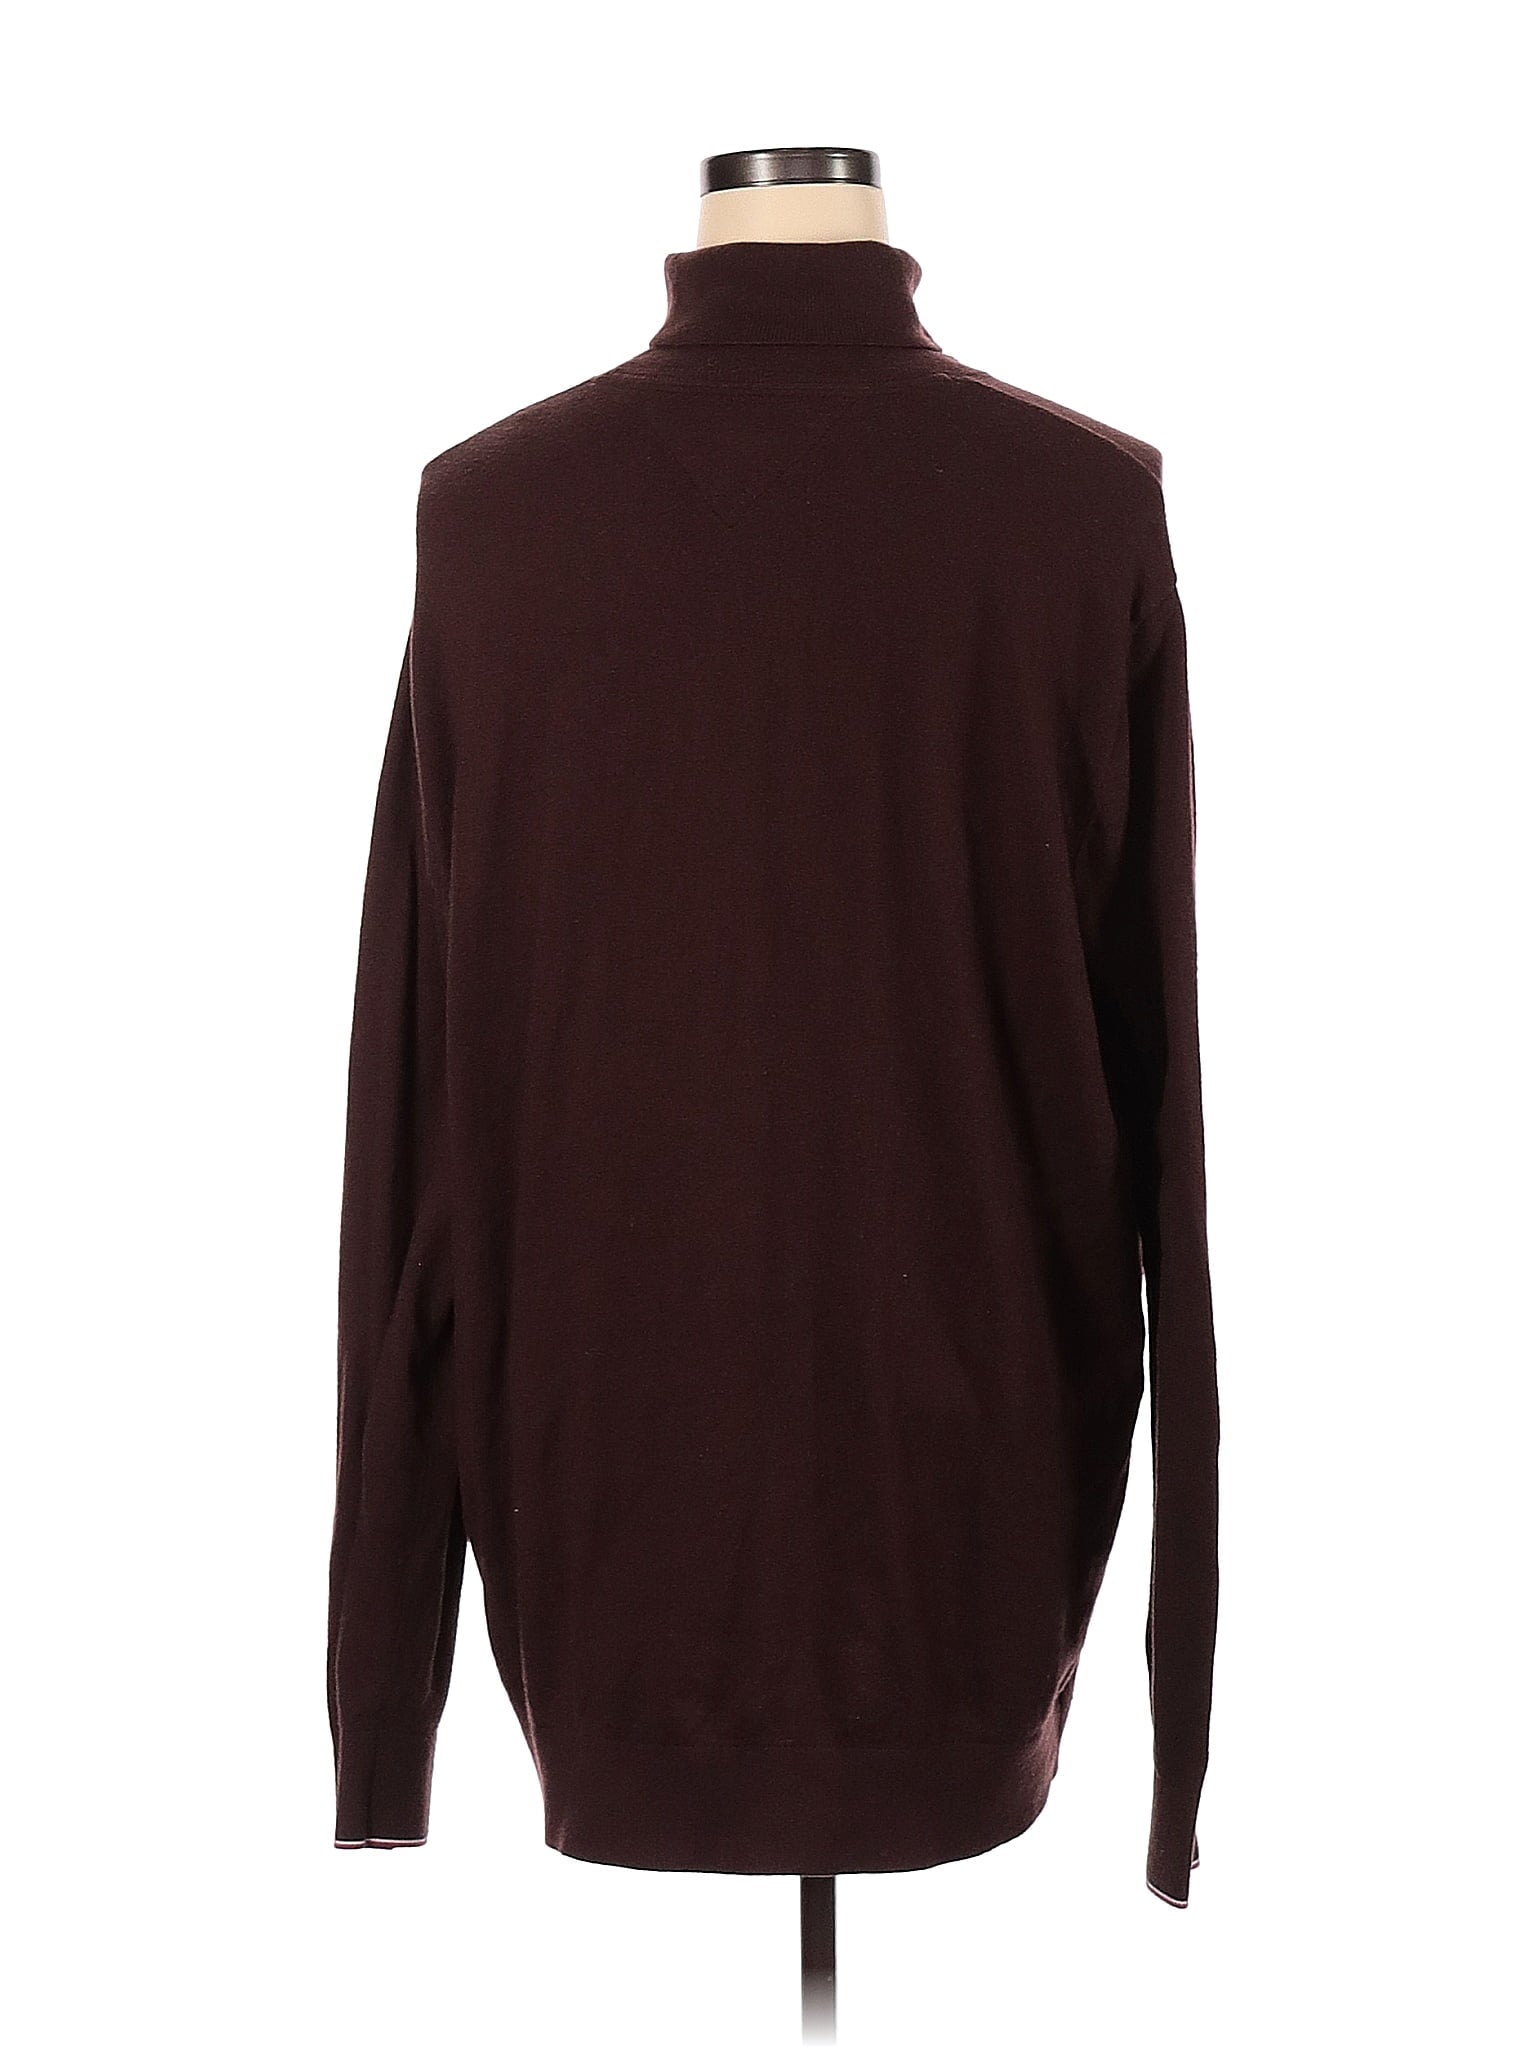 Turtleneck Sweater size - XXXL